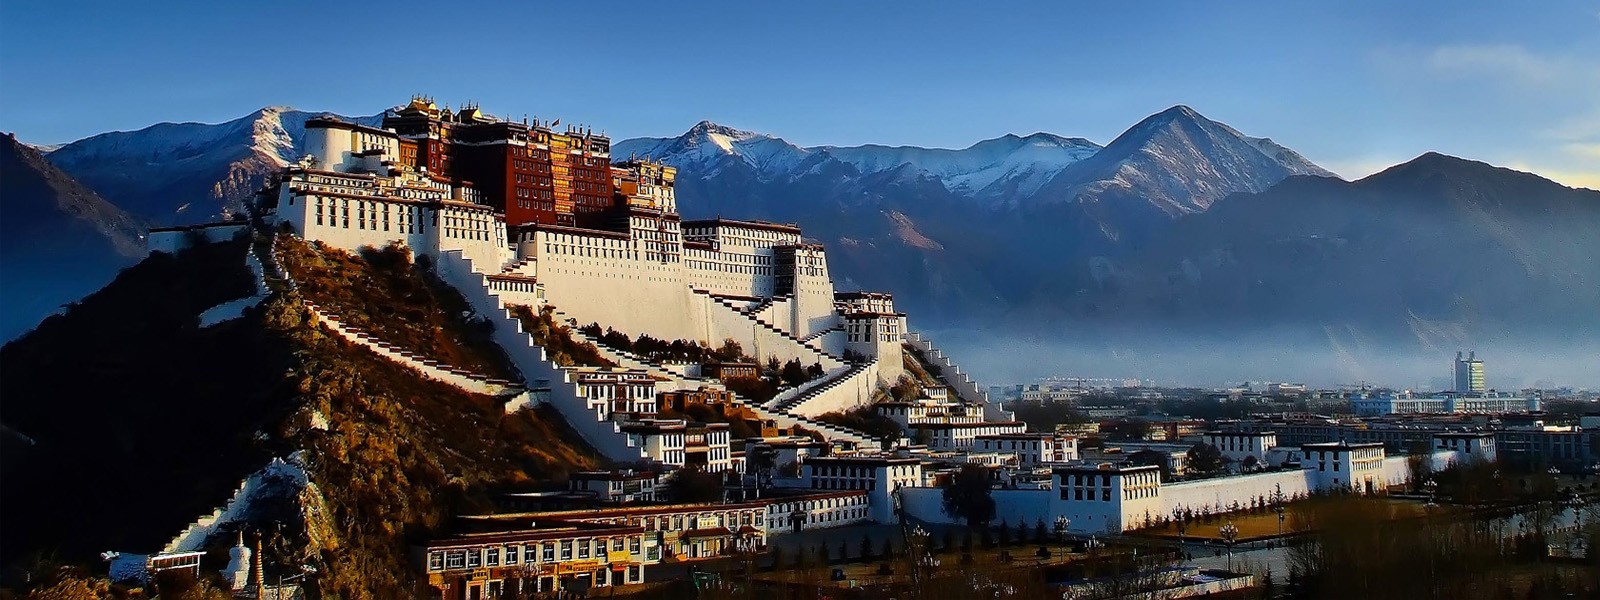 Shishapangma and Lhasa